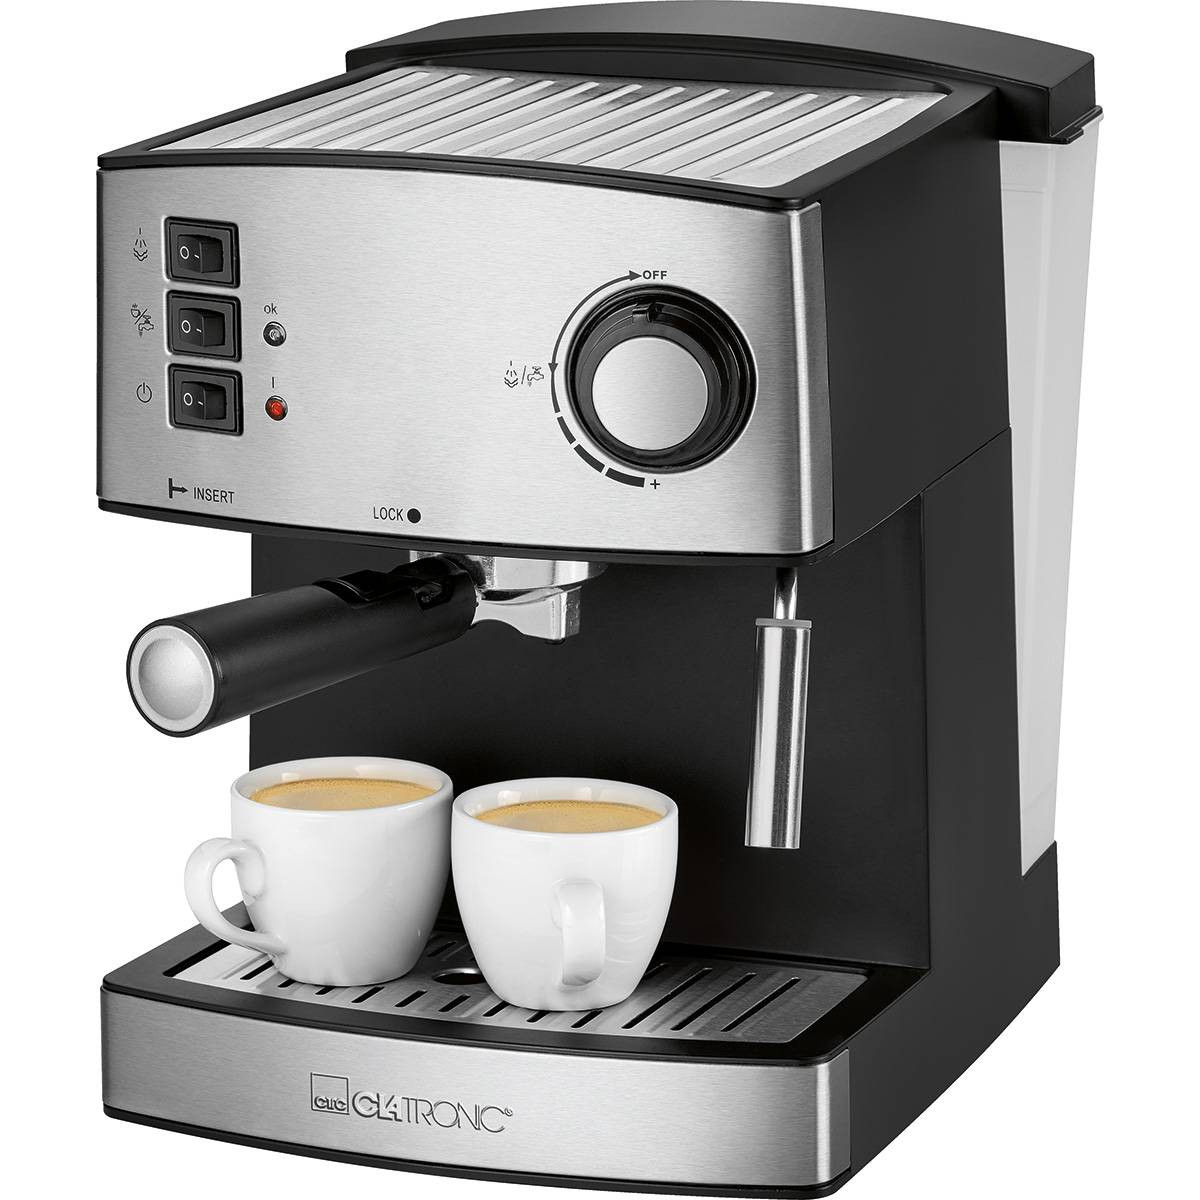 MPM MKW-08M Cafetera Express 20 bares, Espresso, Cappuccino, Latte